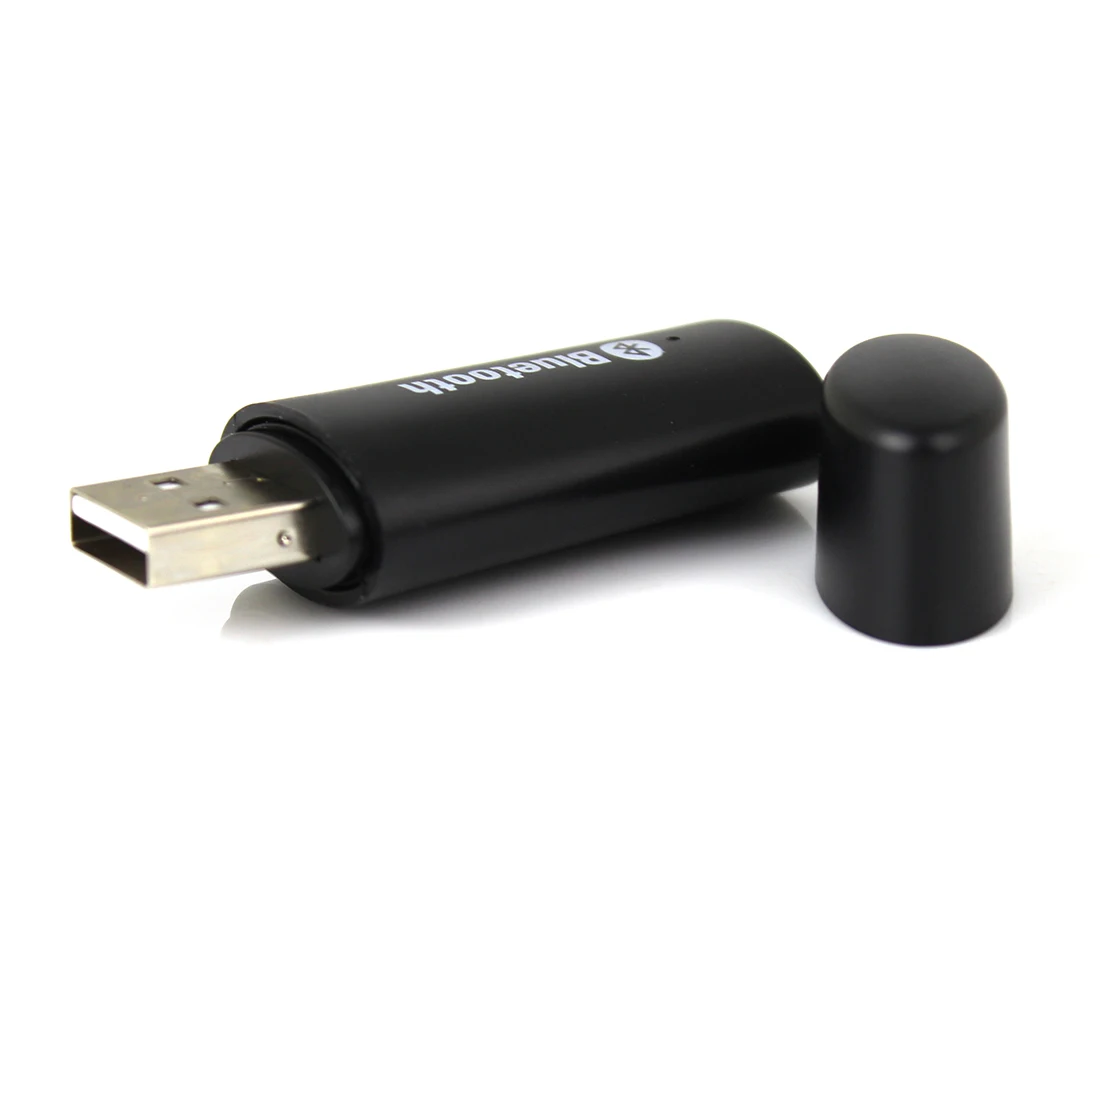 NOYOKERE Новый универсальный Bluetooth 3,5 мм USB приемник музыке стерео аудио адаптер Черный Бесплатная доставка